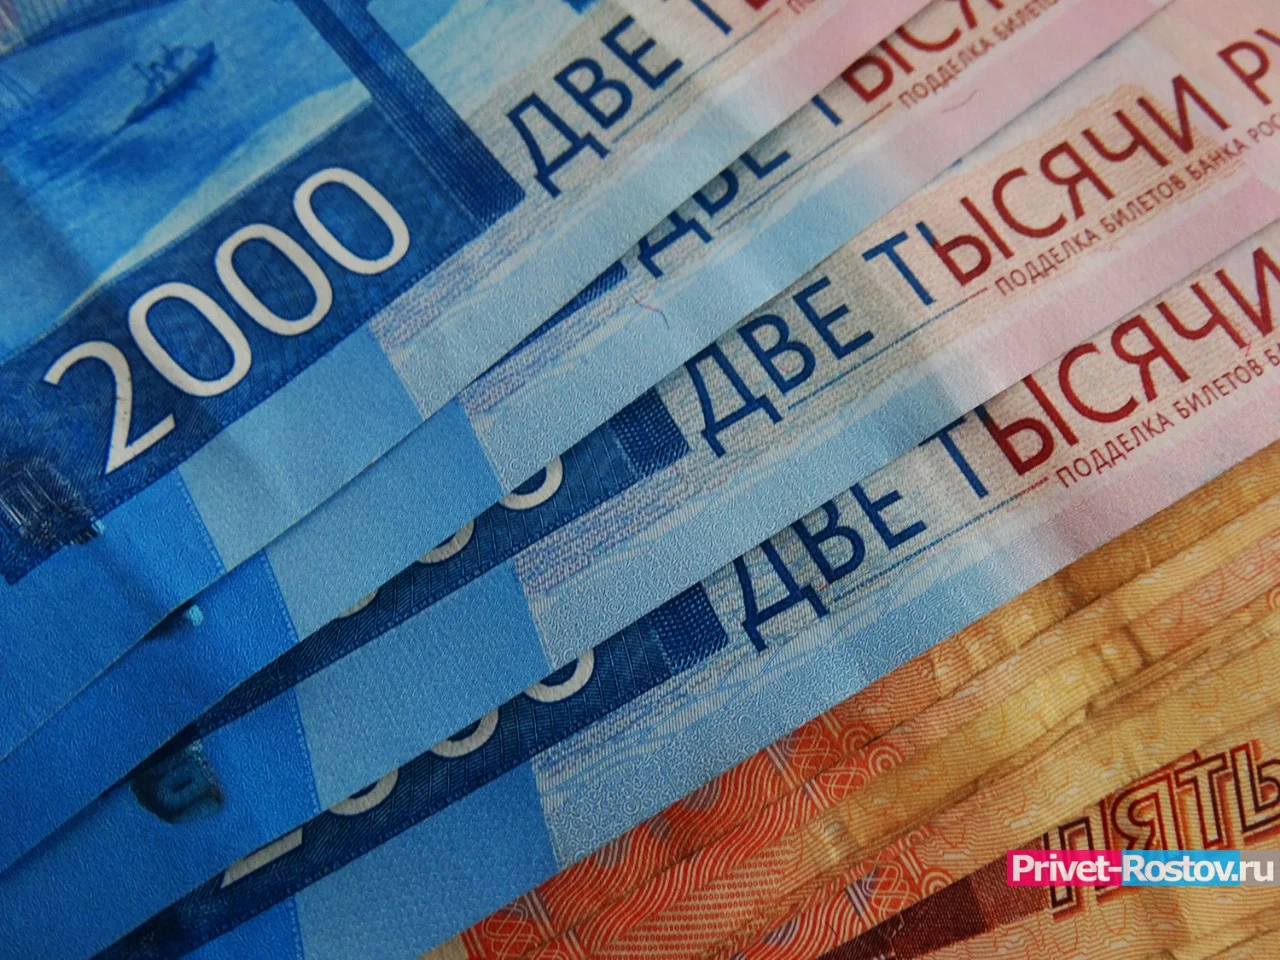 Пенсионеры подпрыгнули от новости: по 15 тысяч рублей на банковскую карту получат многие к Новому году